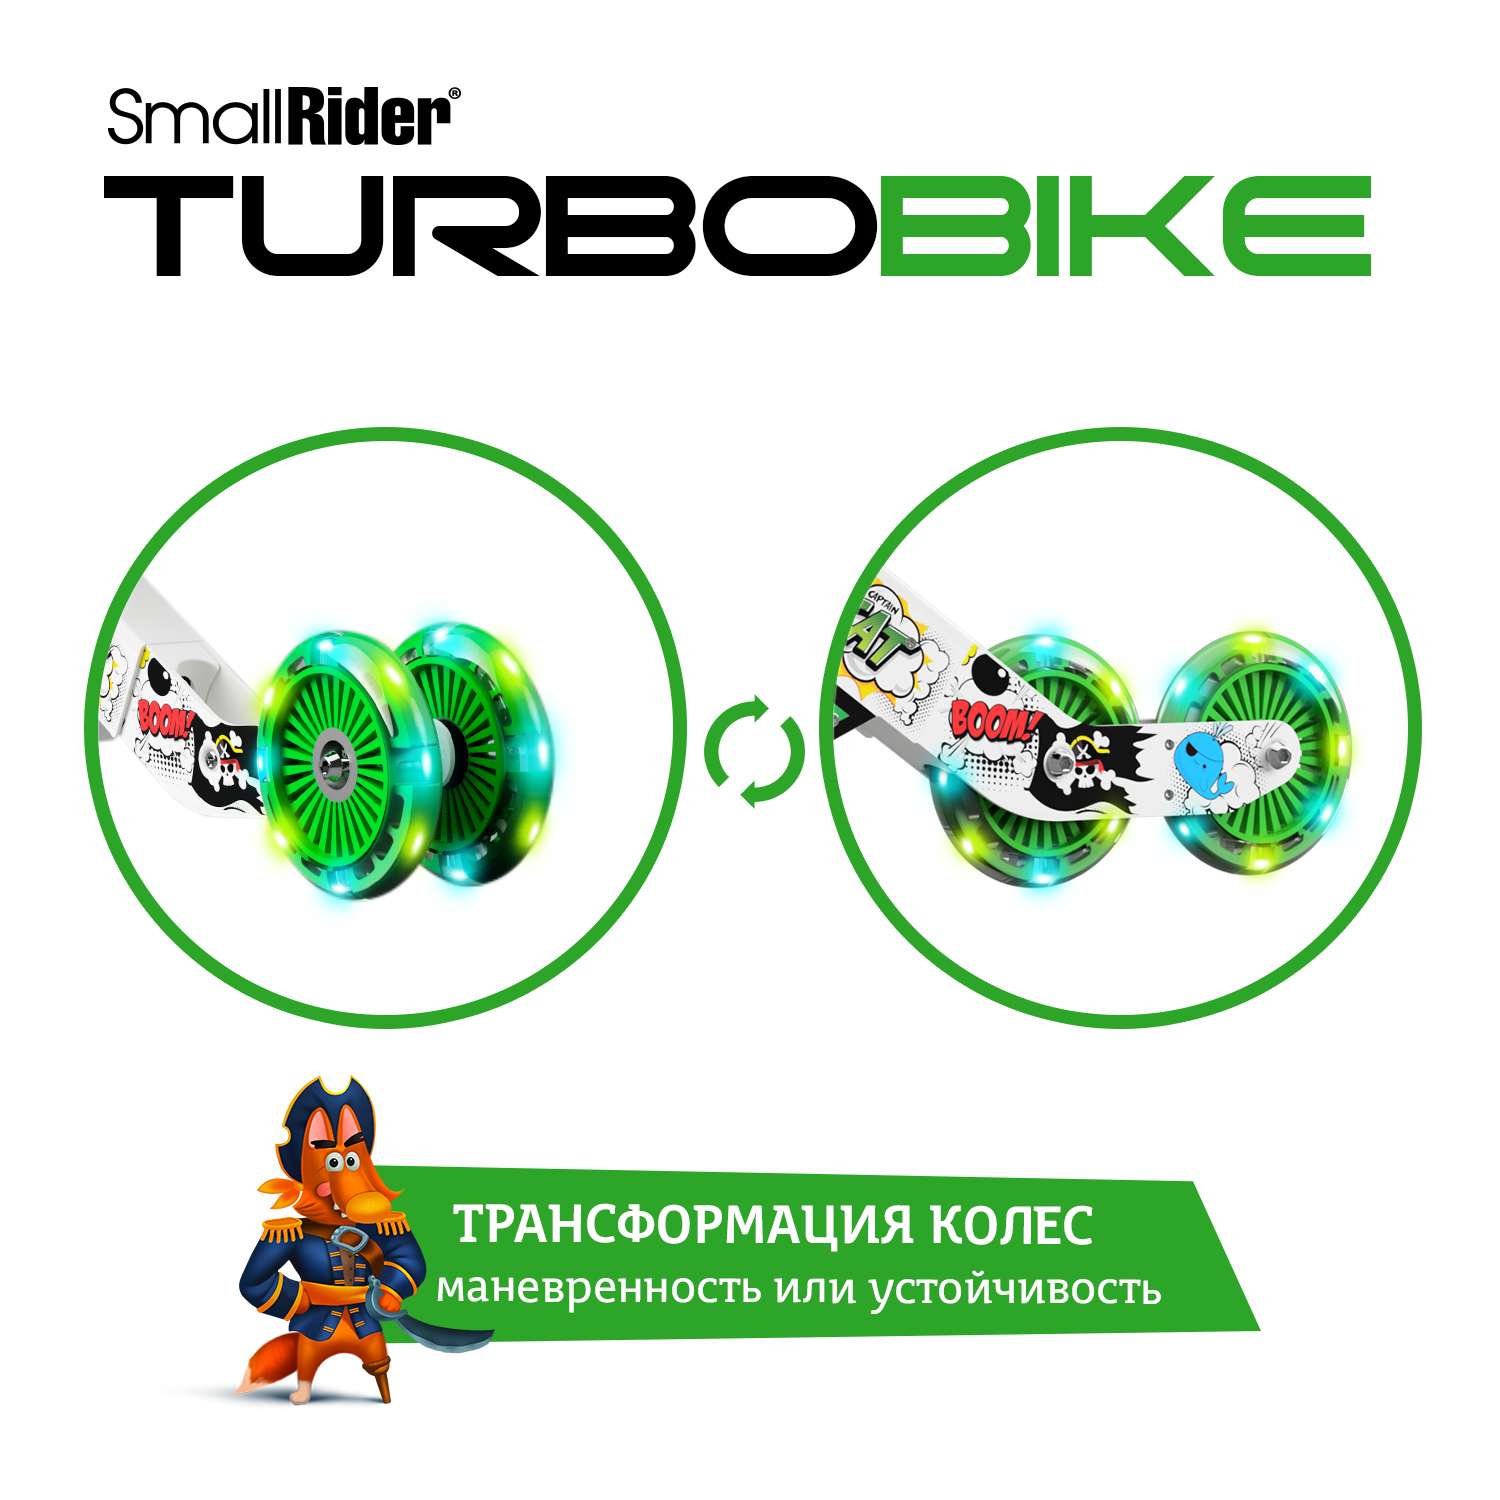 Беговел Small Rider для малышей Turbo Bike зеленый - фото 3